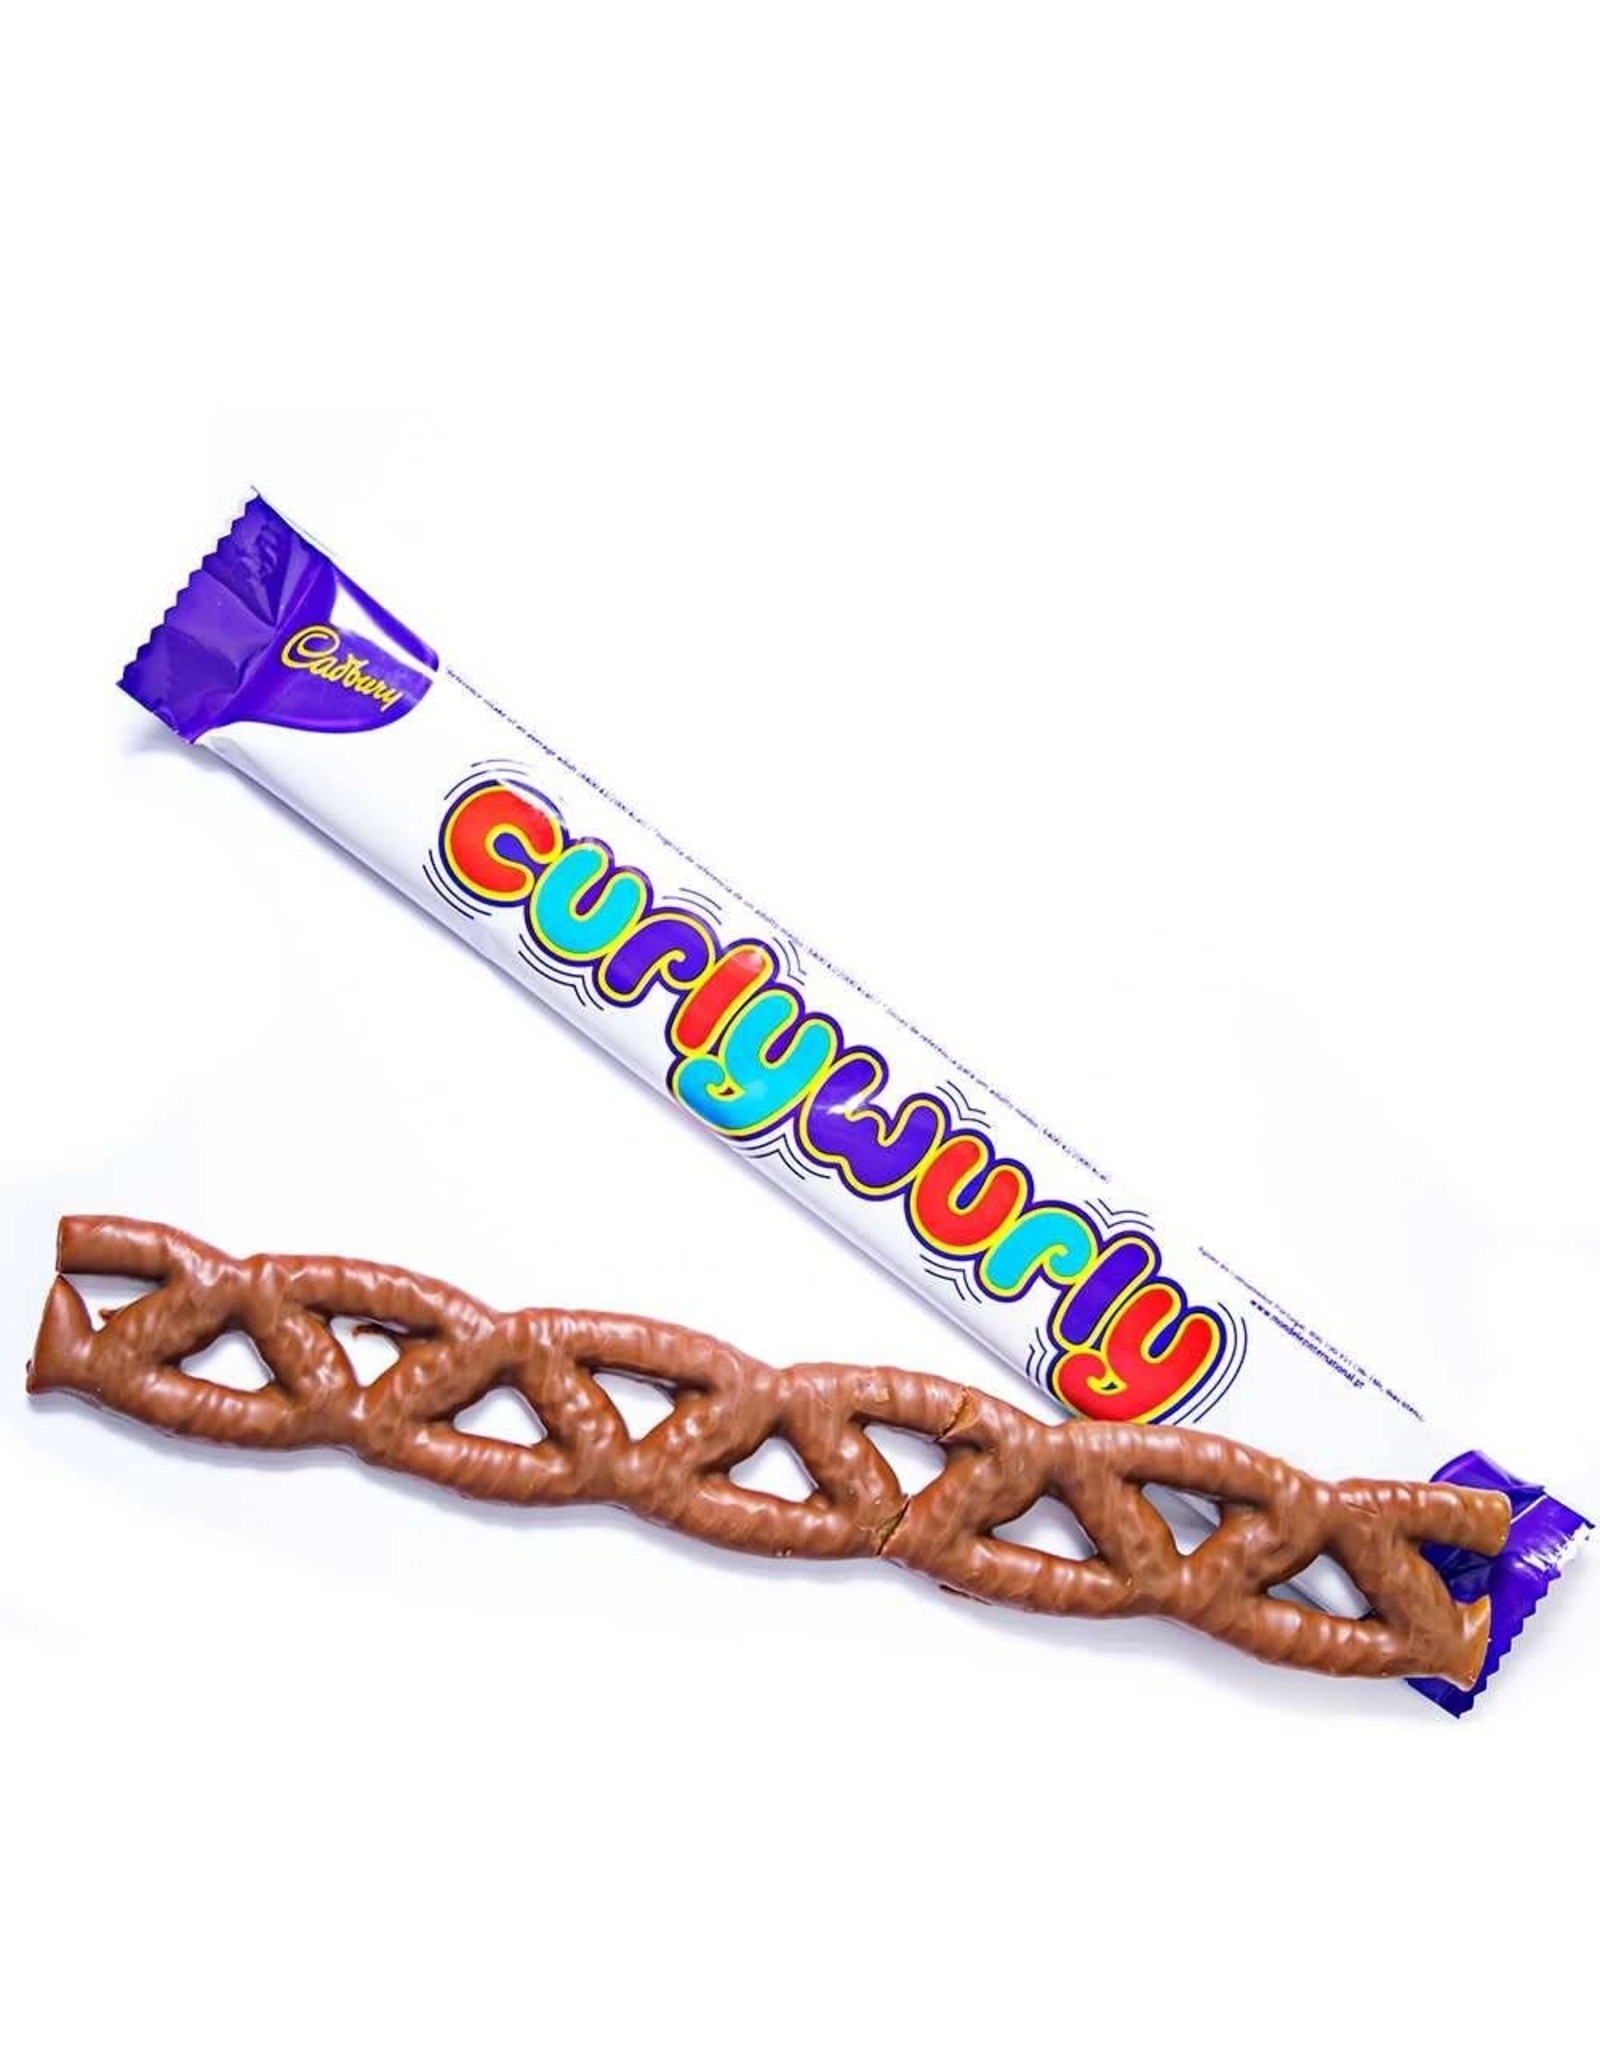 Cadbury Cadbury Curly Wurly (British)